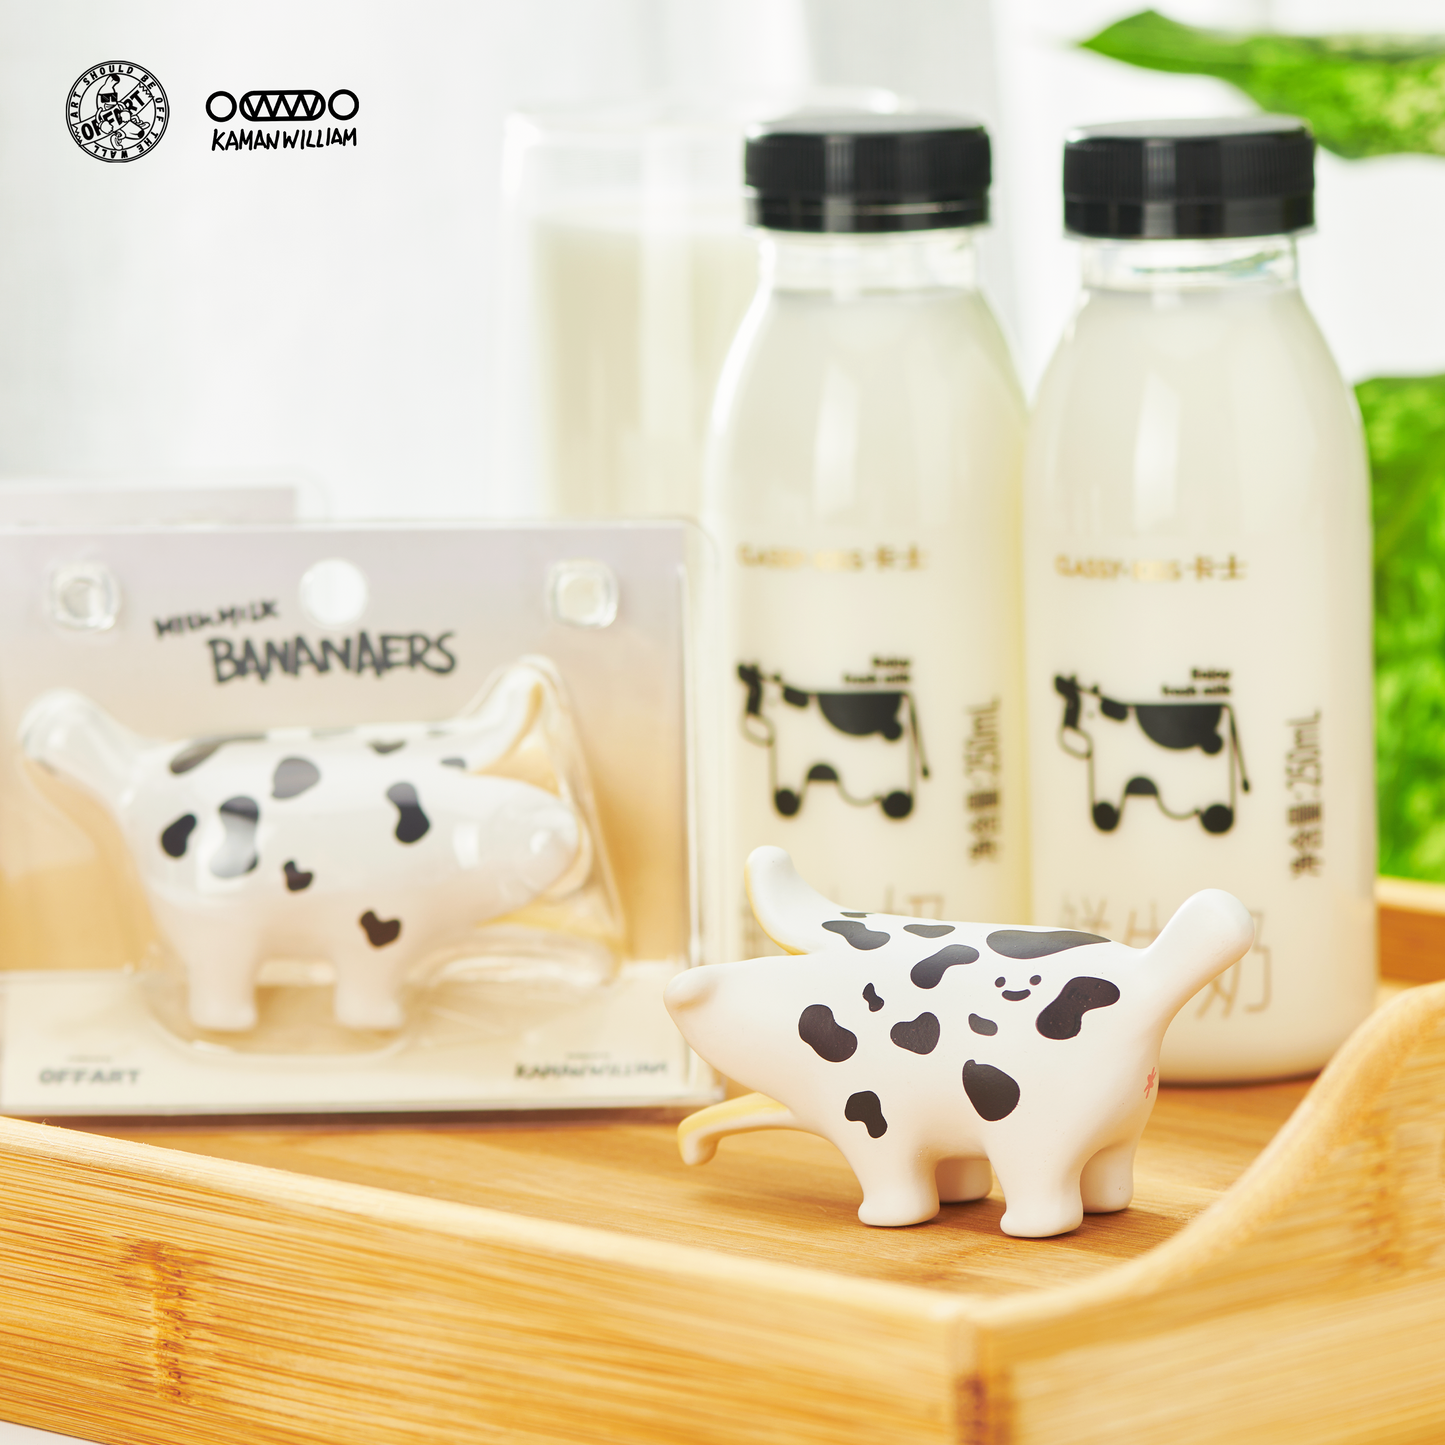 OFFART X Kamanwilliam Mini Bananaer Dog Milk Cow Limited Edition